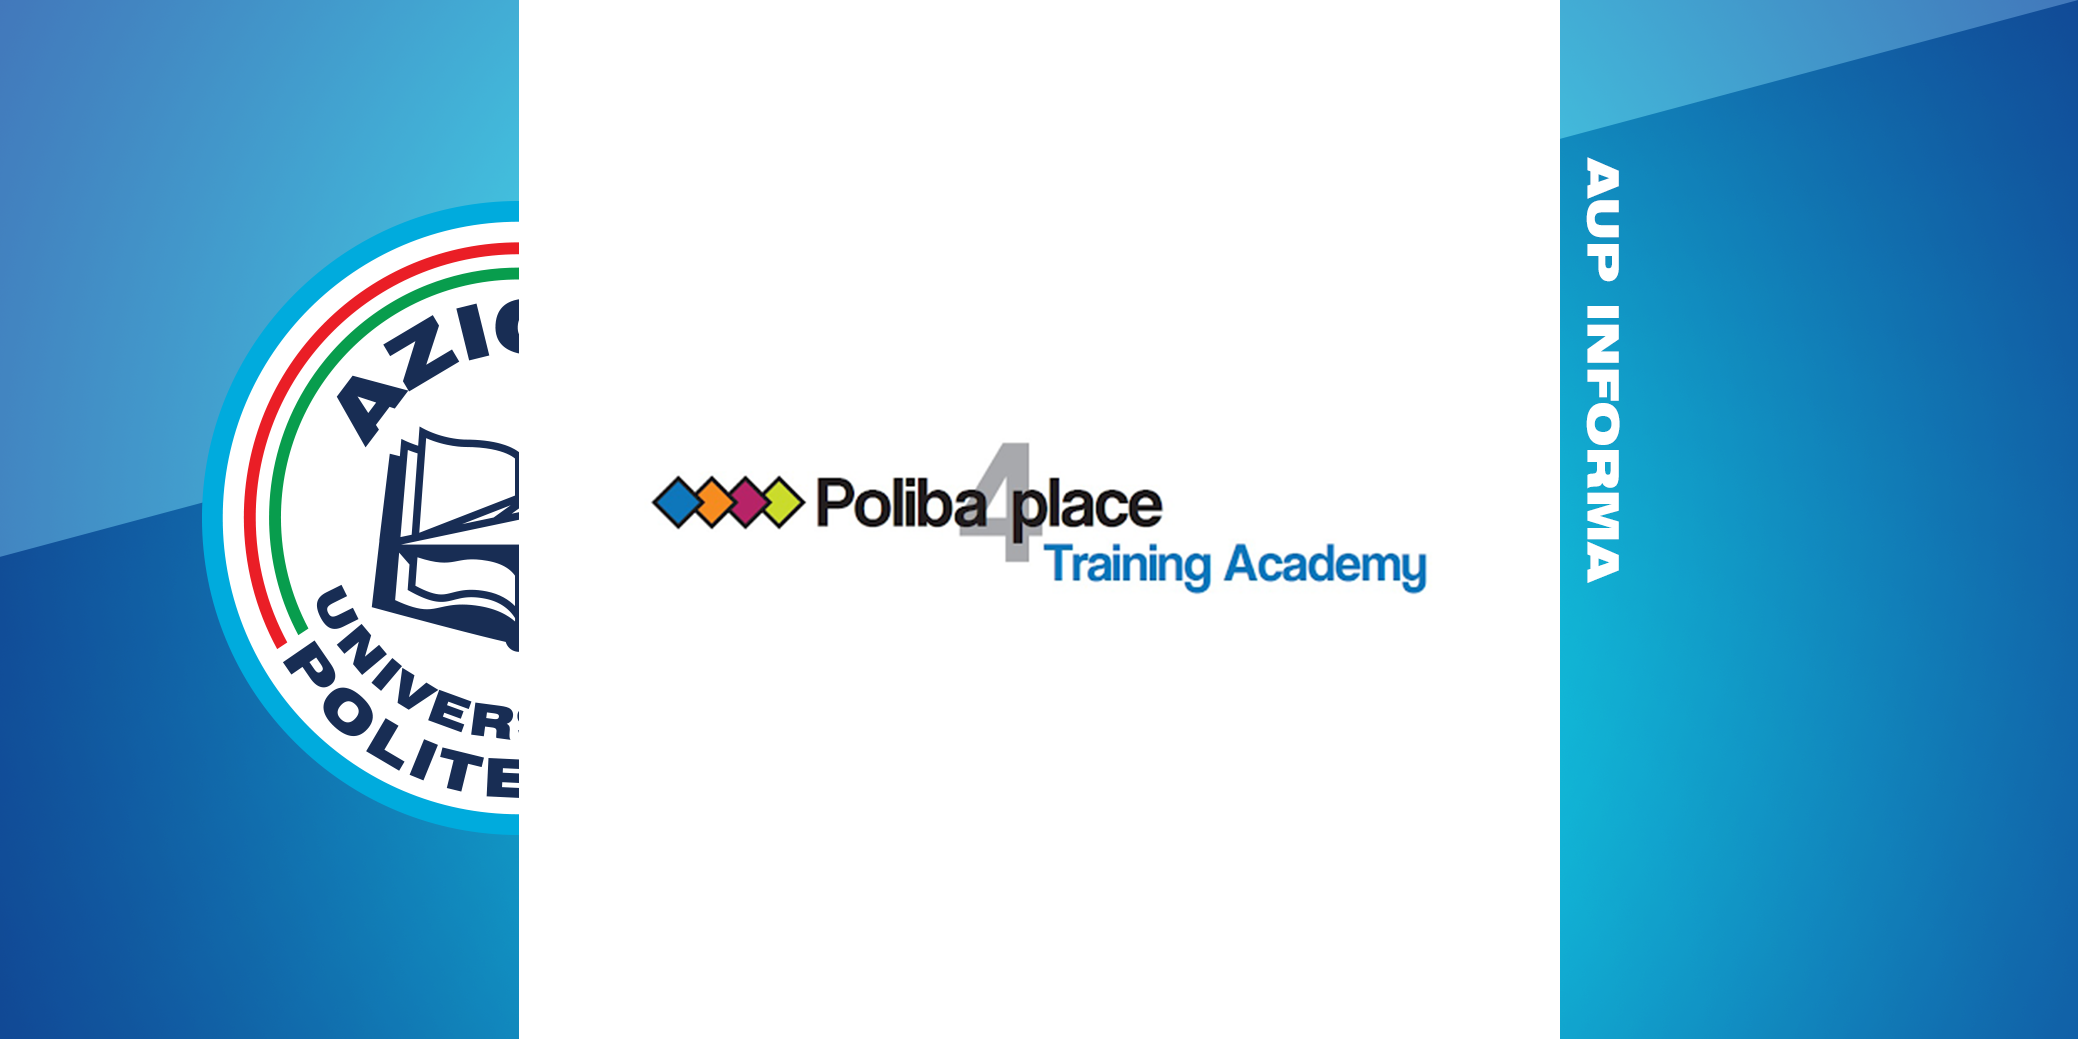 GRADUATORIE POLIBA SOFT SKILL - TRAINING ACADEMY a.a. 2020/2021 - I CICLO